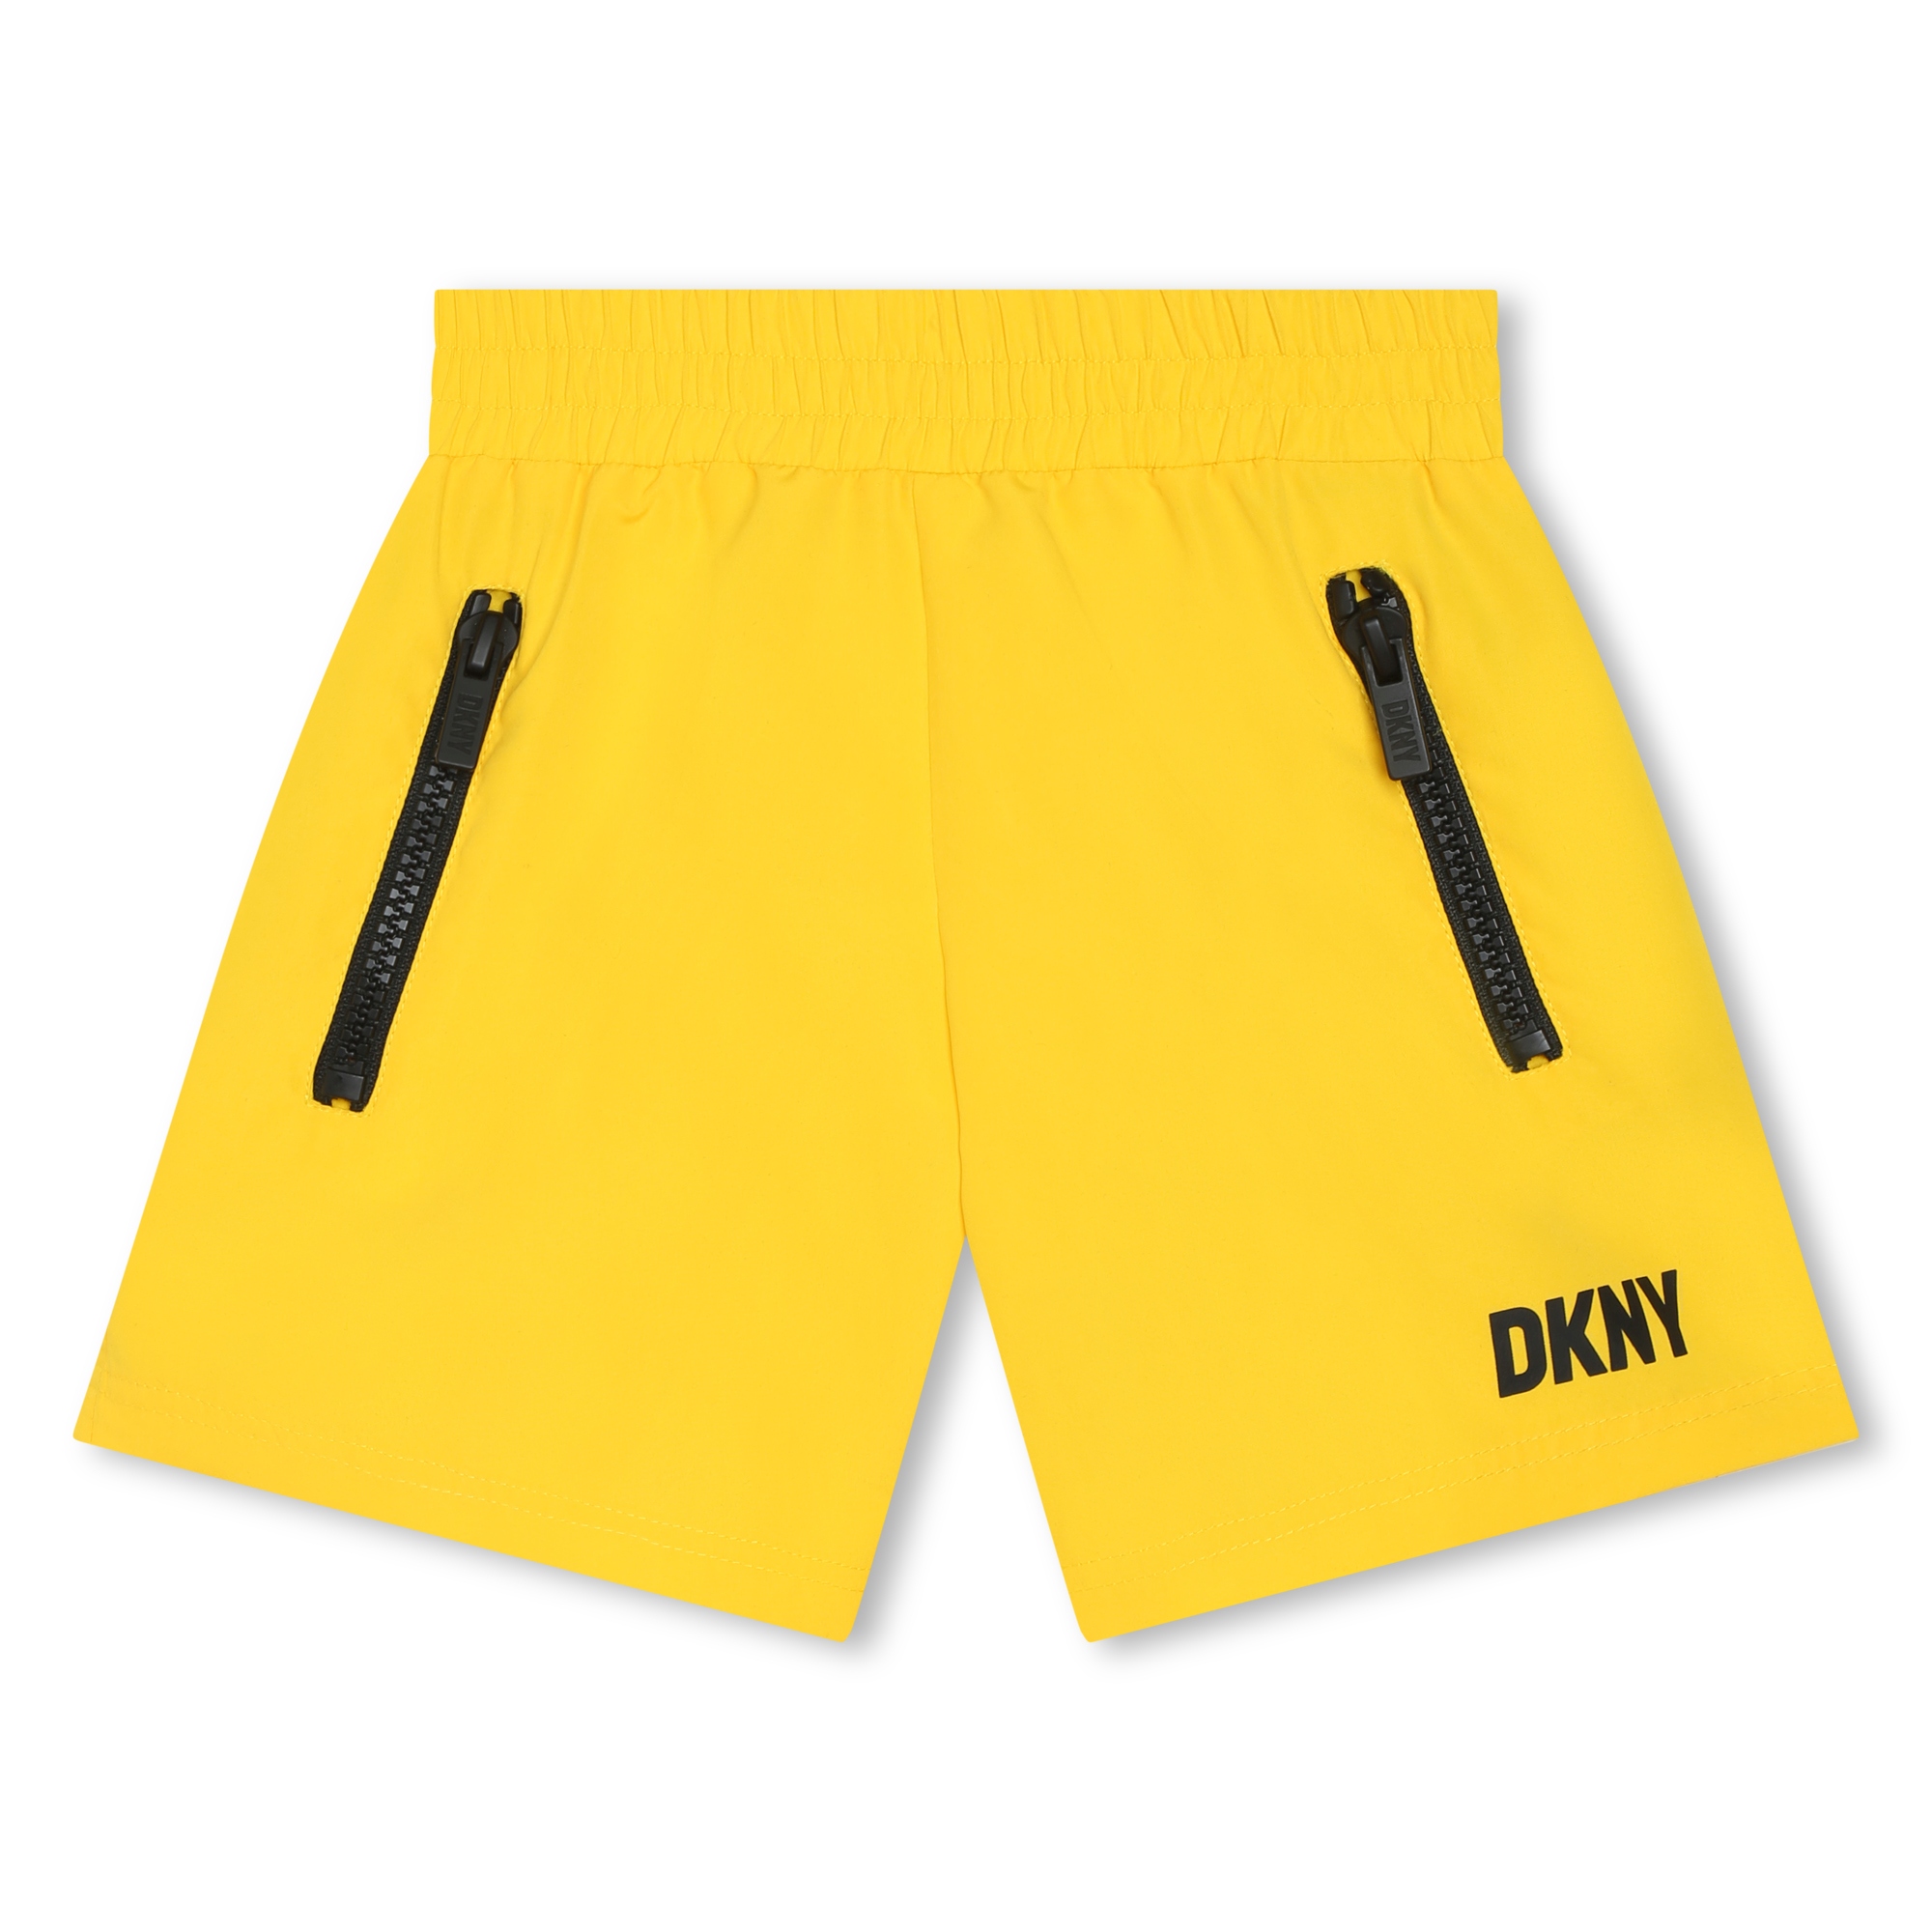 Badeshorts mit Reißverschlusstasche DKNY Für JUNGE